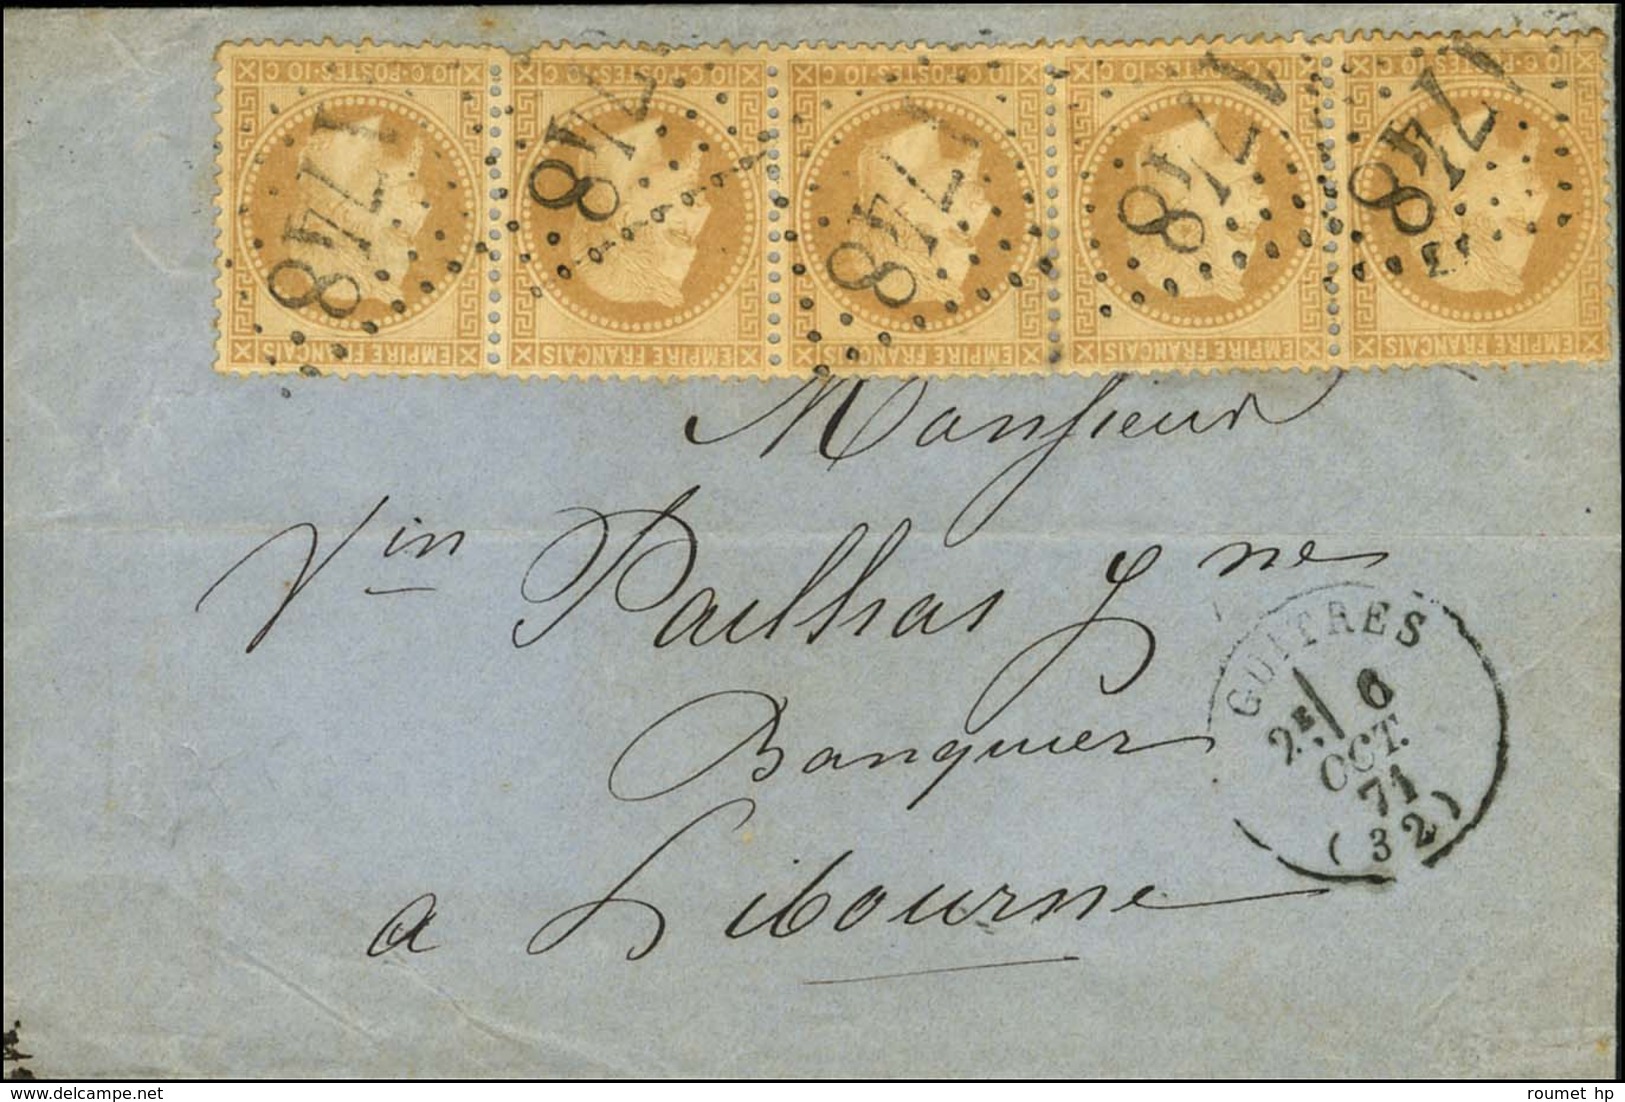 GC 1748 / N° 28 (5) (1 Ex Def) Càd T 16 GUITRES Sur Lettre Pour Libourne. 1871. - TB. - 1863-1870 Napoleon III With Laurels